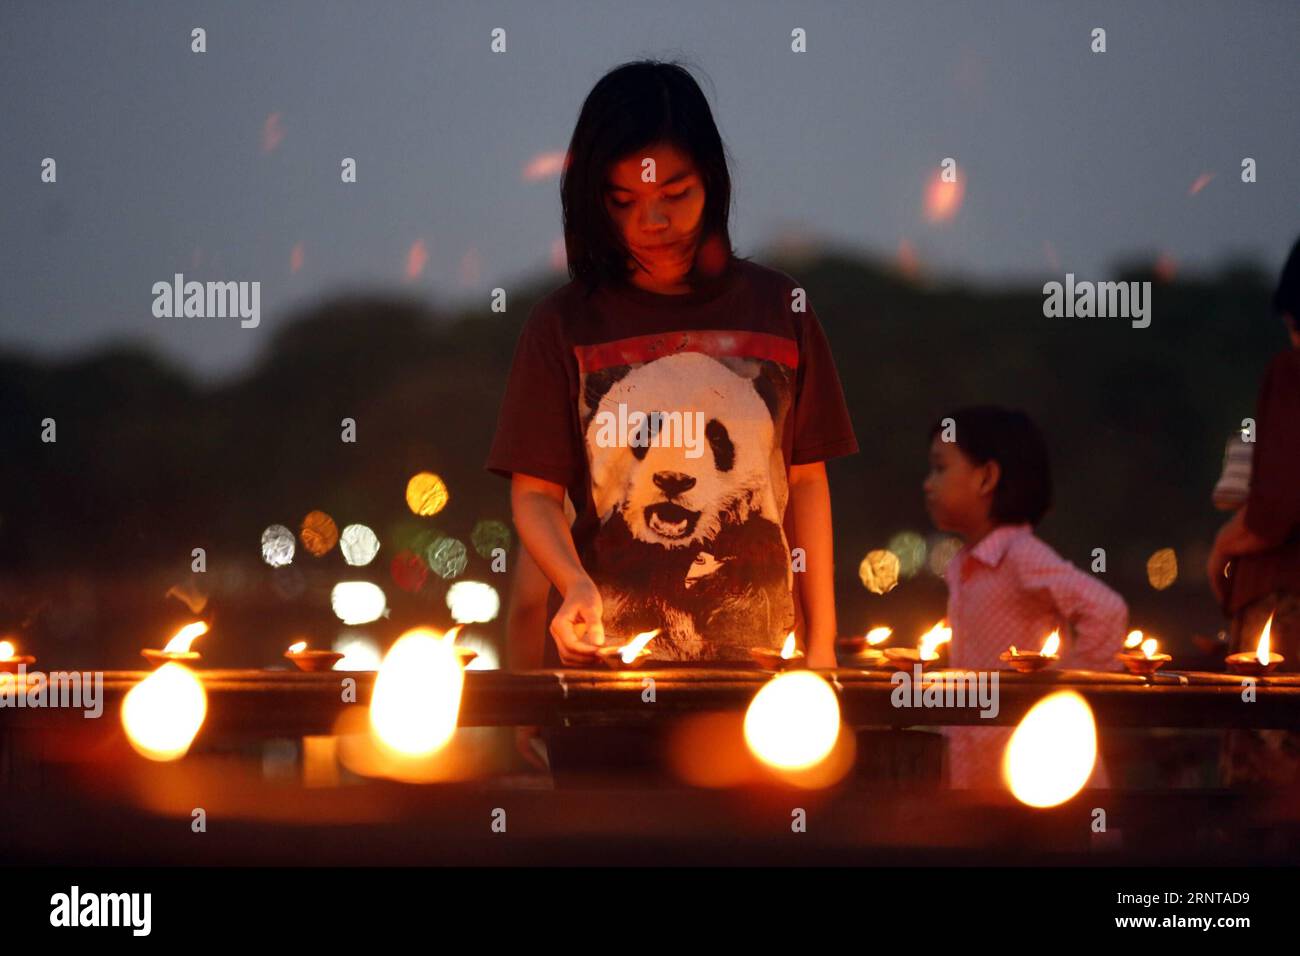 (171103) -- YANGON, 3. November 2017 -- Ein Mädchen zündet Öllampen während des Tazaungdaing-Festivals in Yangon, Myanmar, am 3. November 2017 an. Das Tazaungdaing-Festival findet im achten Monat des Kalenderjahres Myanmars statt, um das Ende der Regenzeit zu markieren. ) MYANMAR-YANGON-TAZAUNGDAING FESTIVAL UxAung PUBLICATIONxNOTxINxCHN Stockfoto